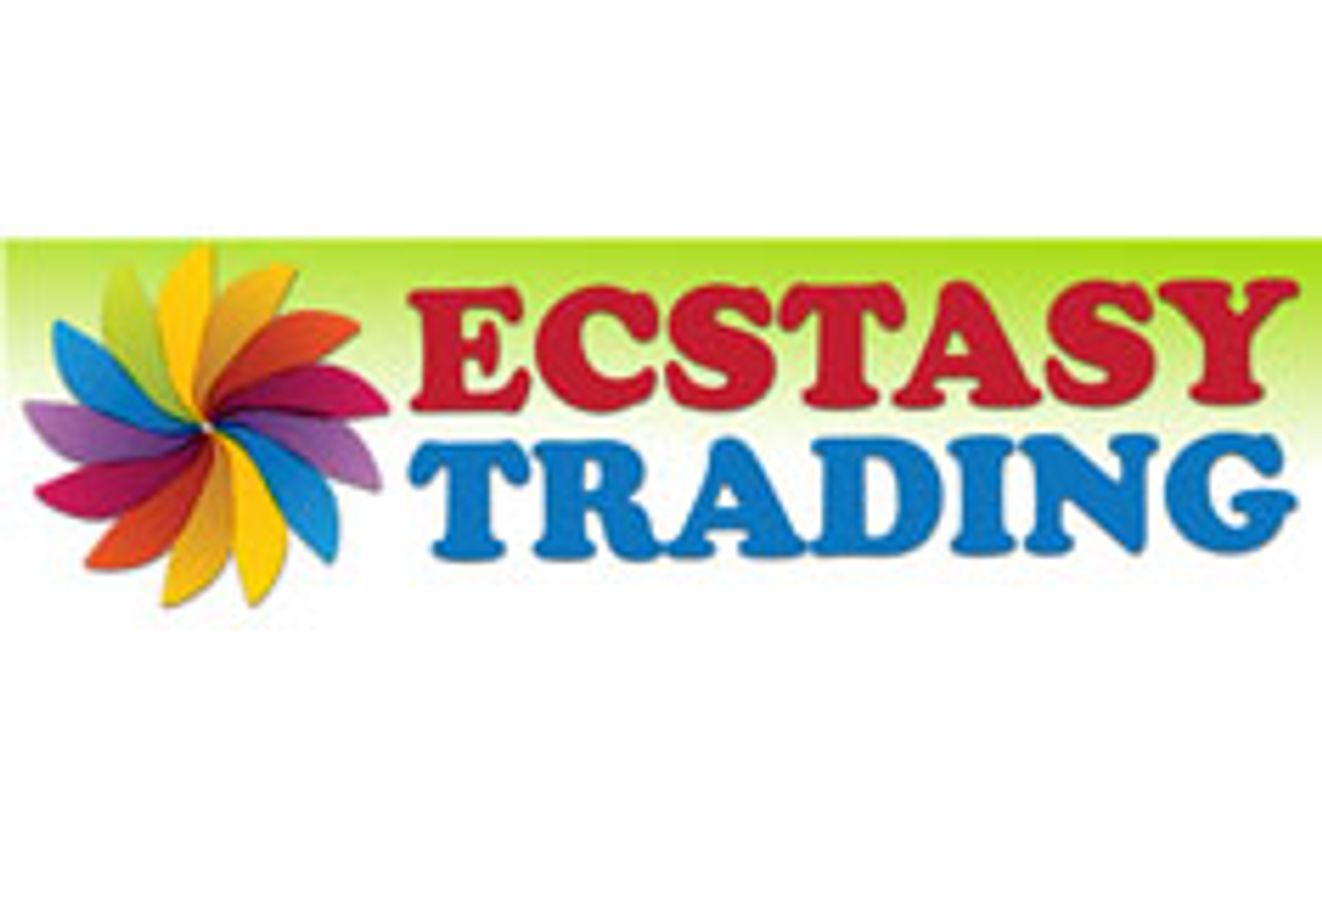 Ecstasy Trading